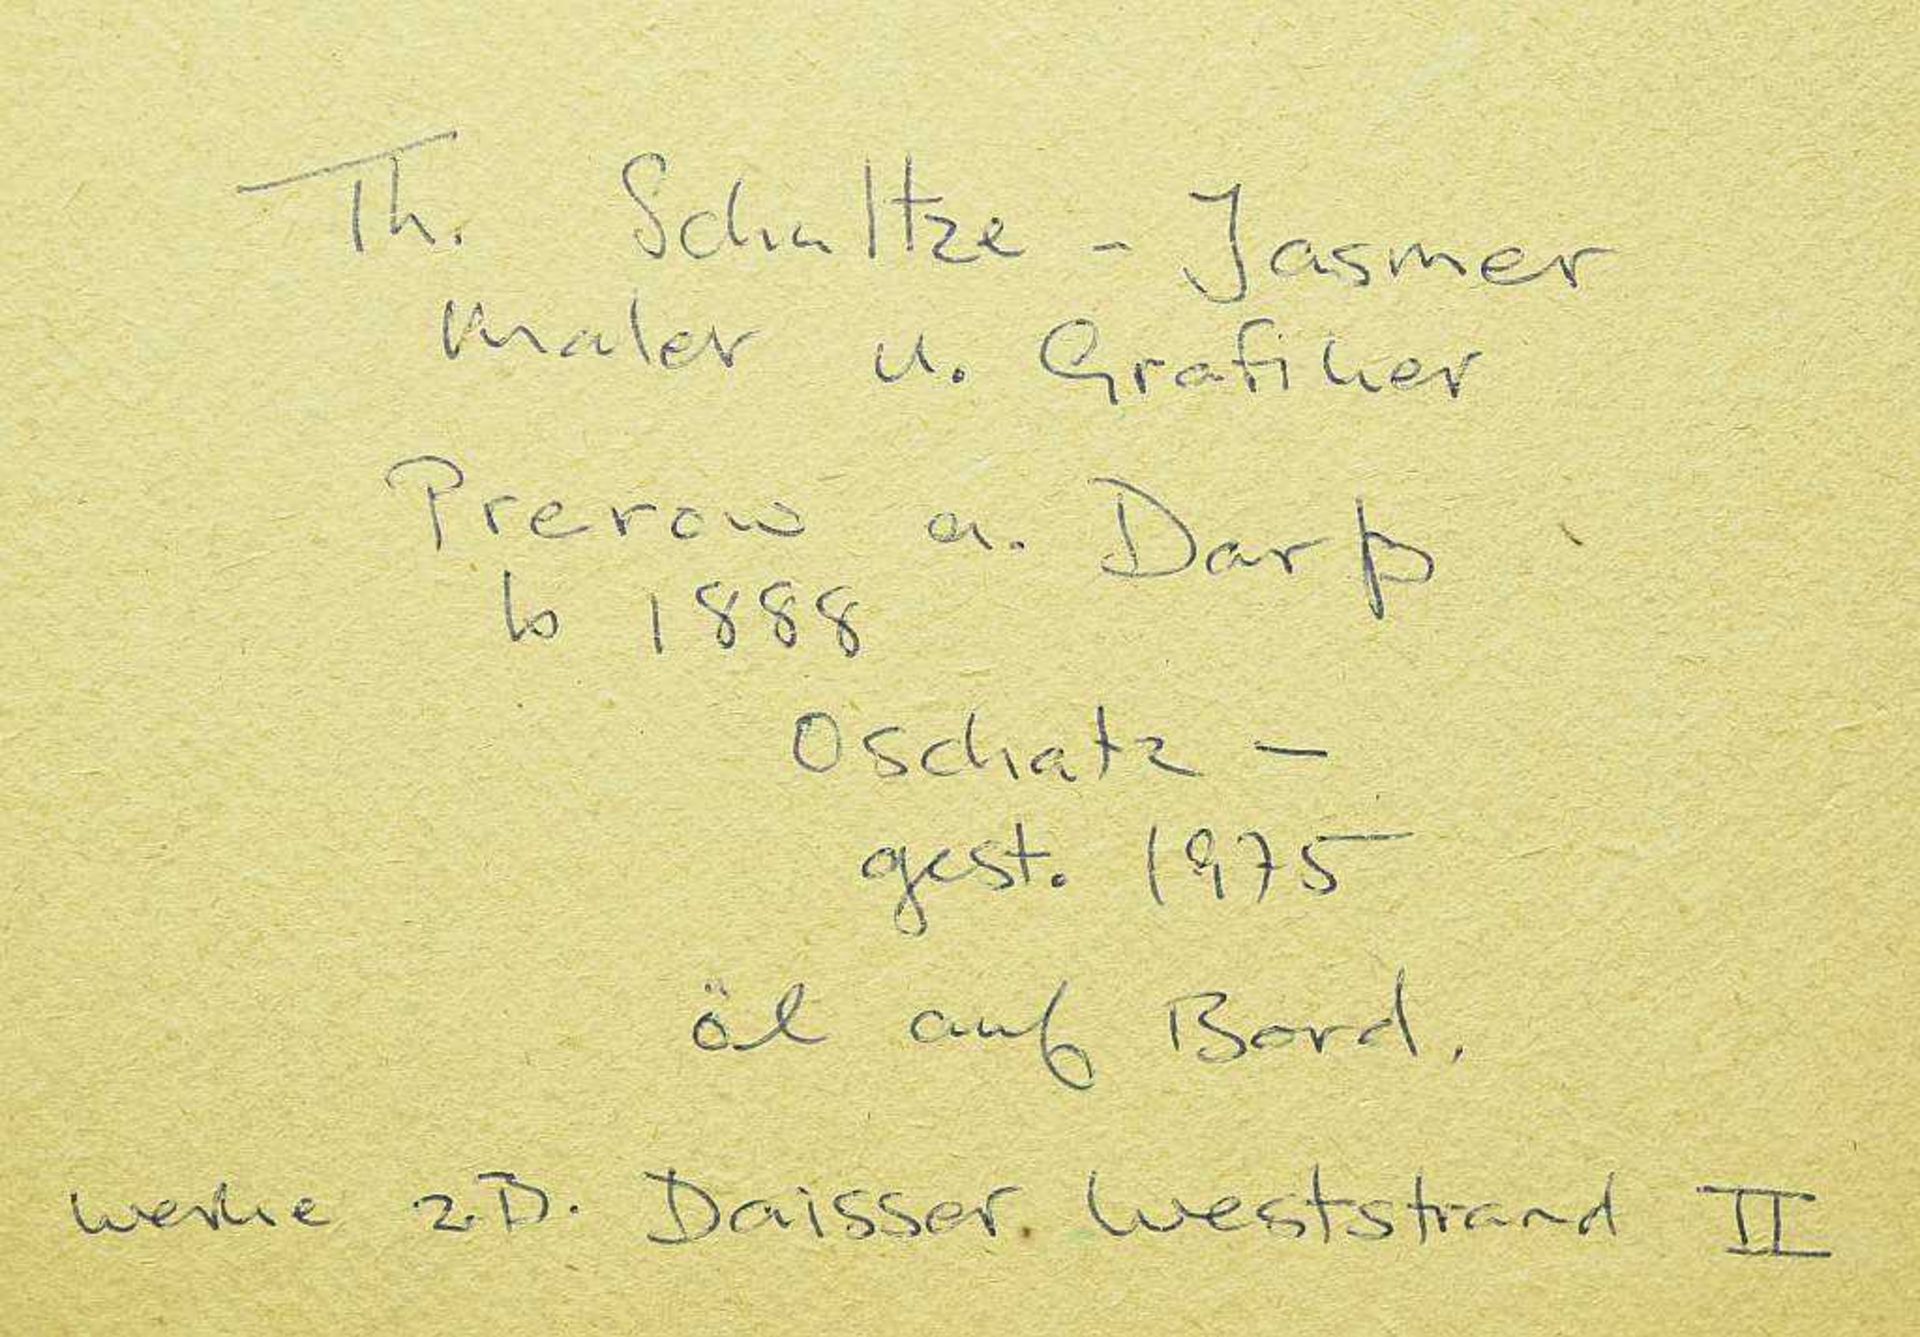 SCHULTZE-JASMER, Theodor. SCHULTZE-JASMER, Theodor. 1888 Oschatz - 1975 (Maler und Grafiker in - Bild 5 aus 6